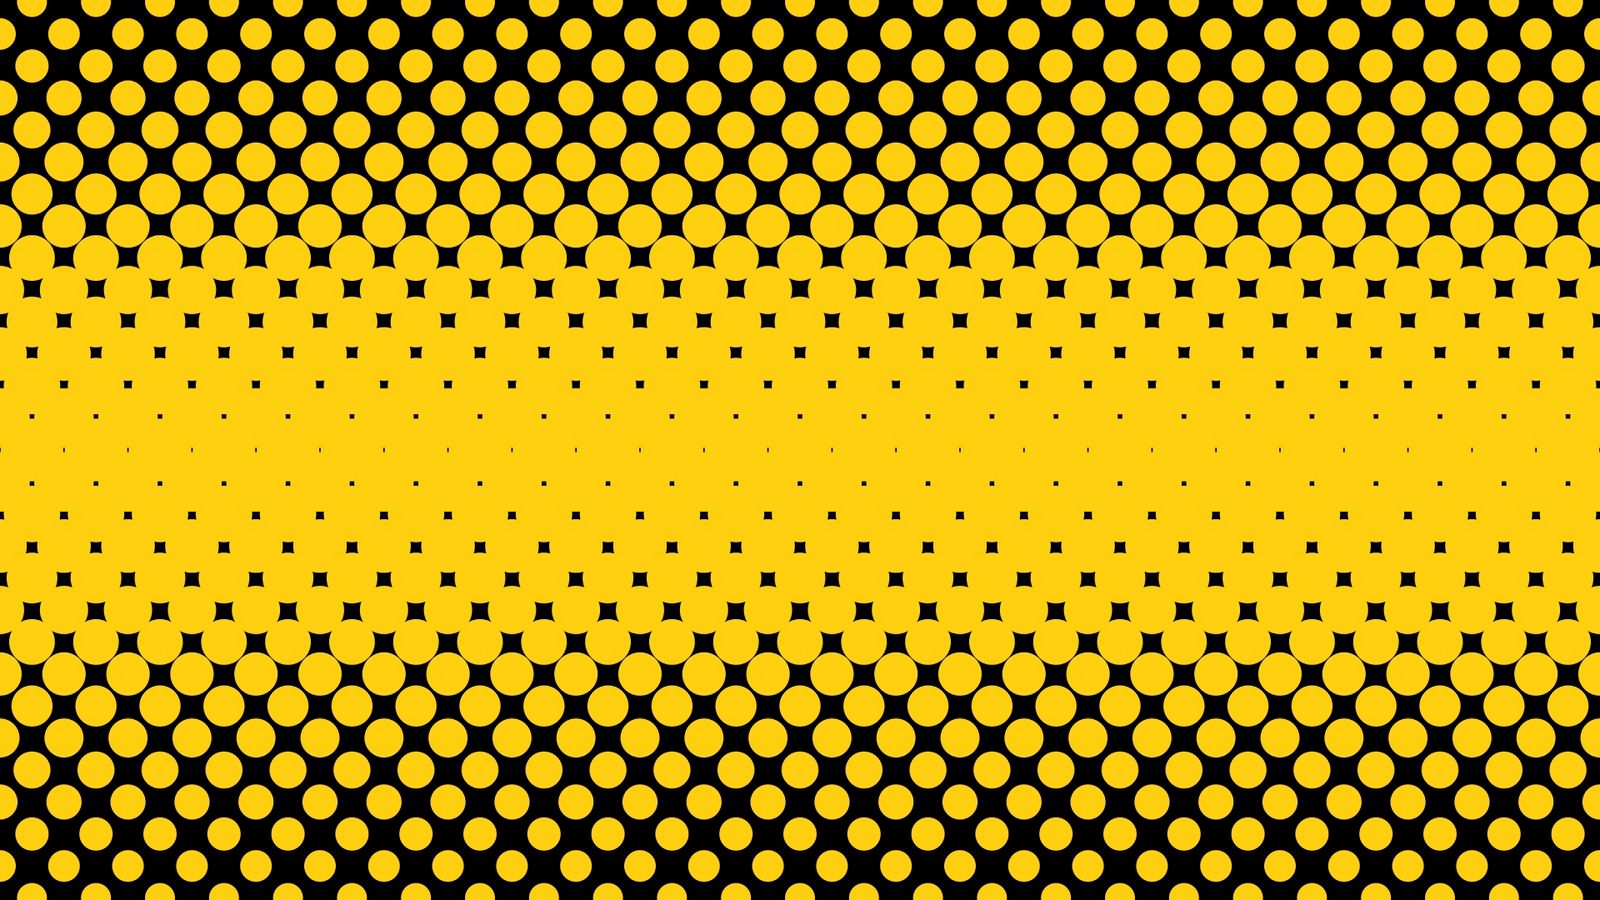 Tải hình nền 1600x900 điểm, vòng tròn, nữa điểm, màu vàng - Hình nền độc đáo và sáng tạo với các điểm, vòng tròn, nữa điểm và màu sắc vàng sẽ làm bạn cảm thấy thật sự hạnh phúc. Hãy tải hình ngay để trang trí cho màn hình của bạn trở nên đầy màu sắc và may mắn.